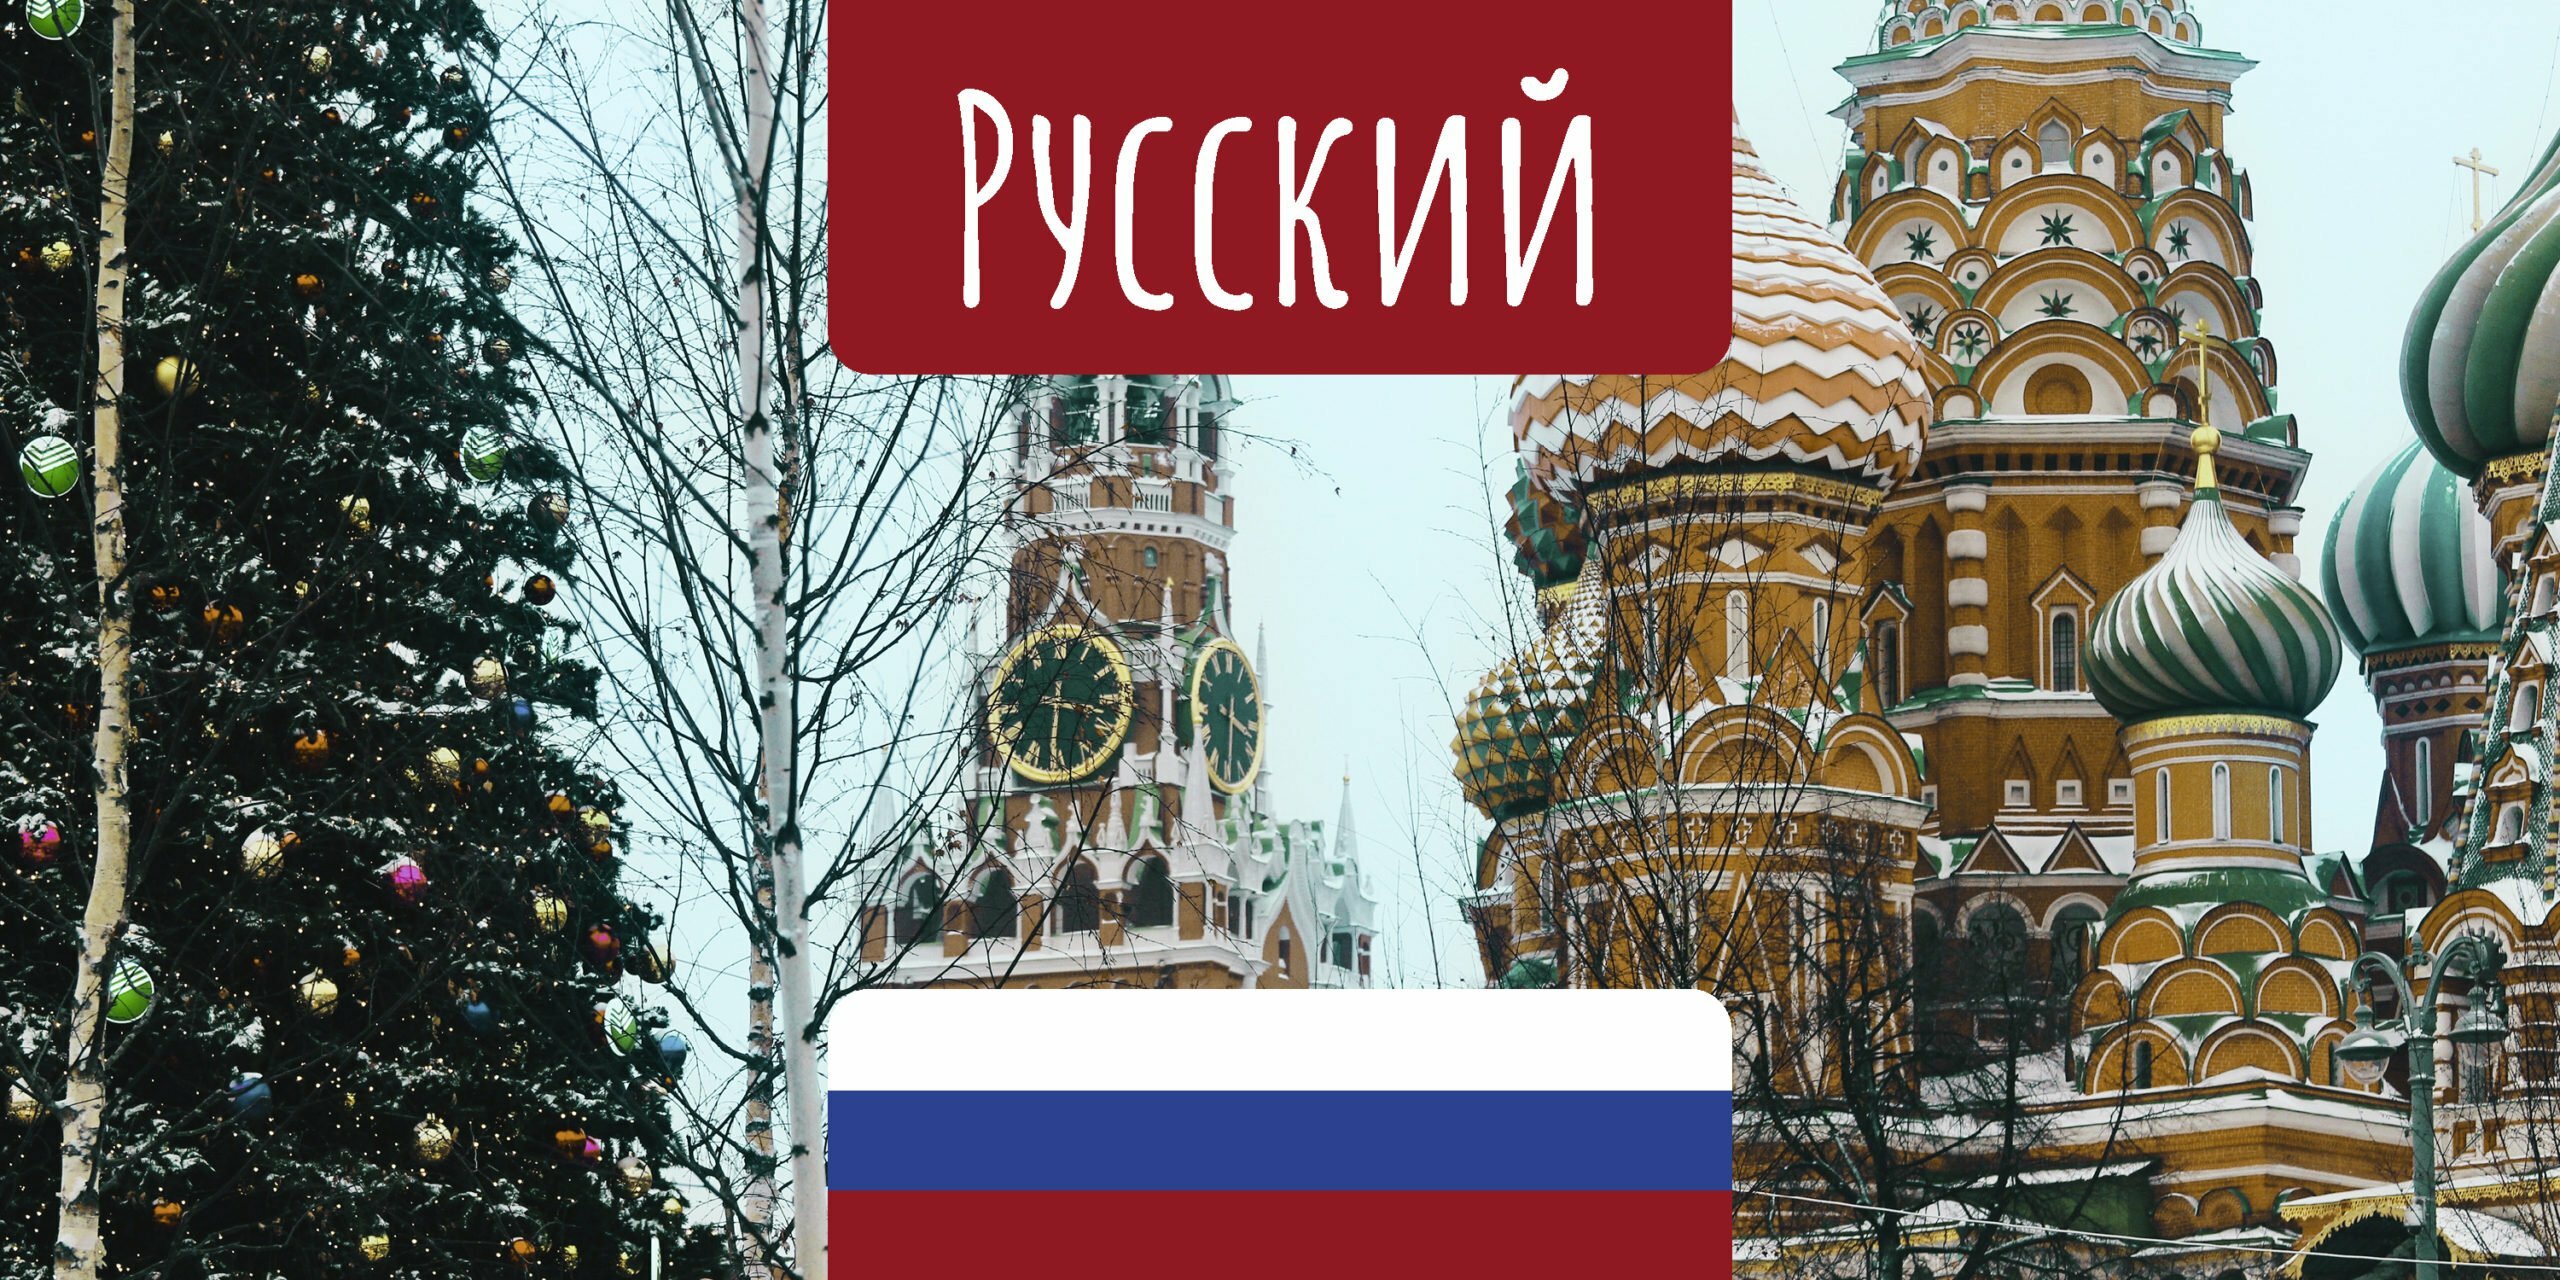 Lerne Russisch